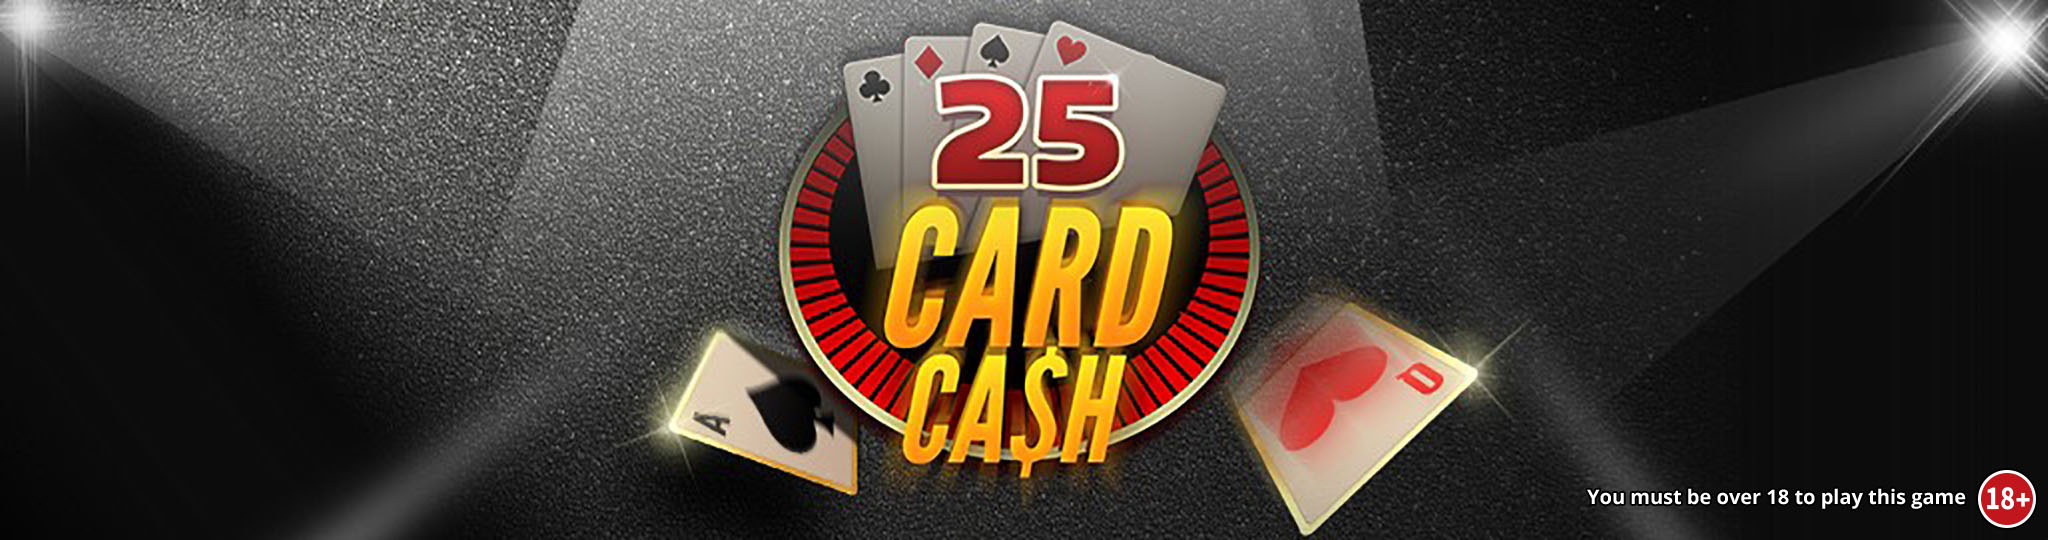 25 Card Cash logo